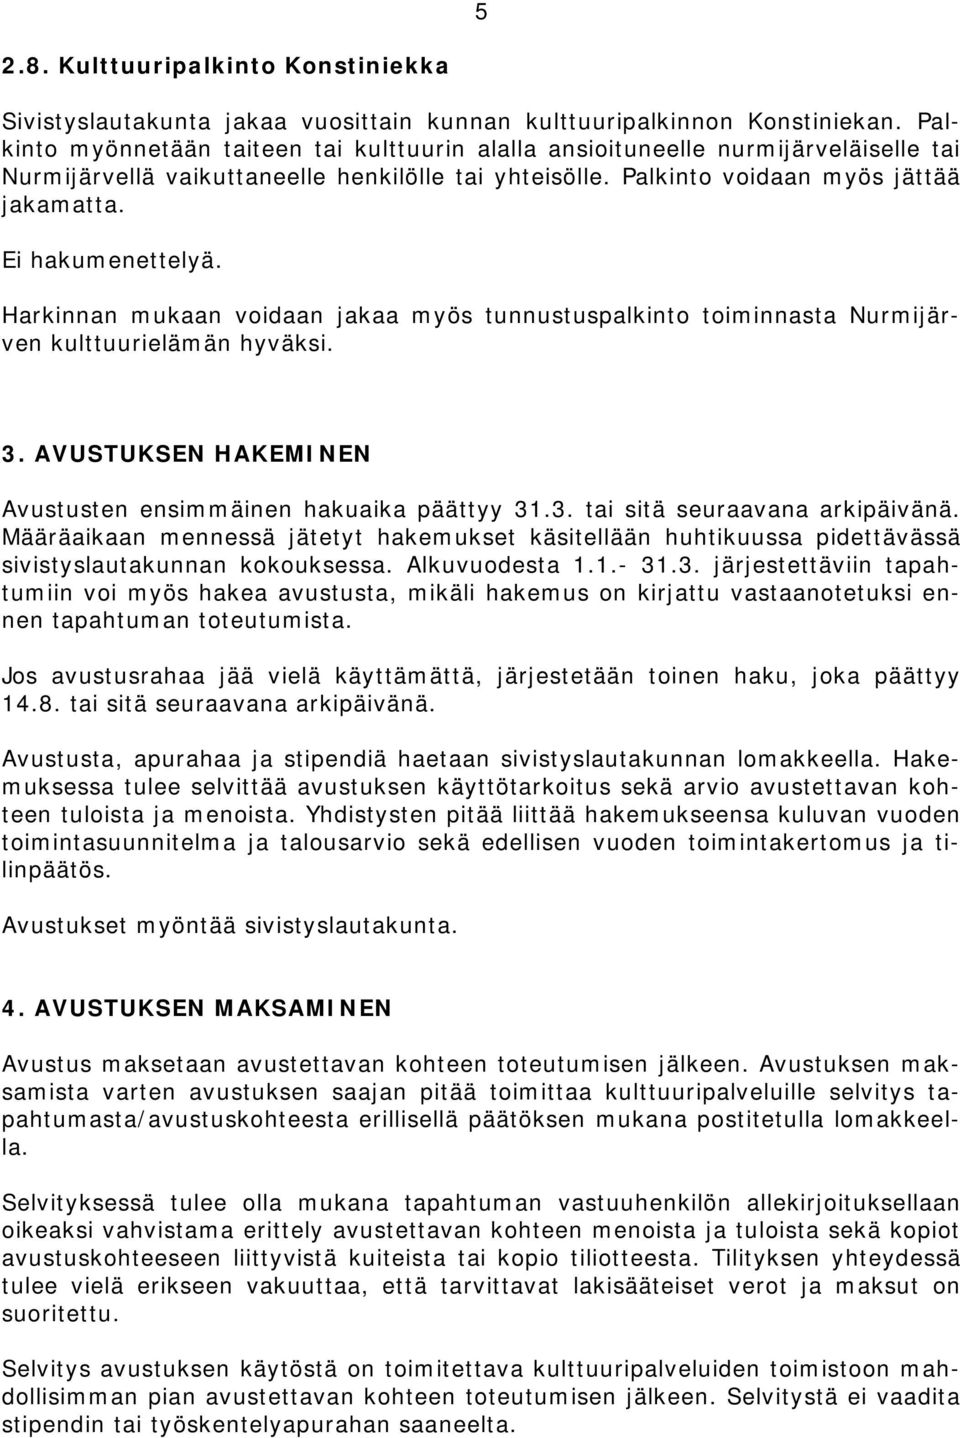 Ei hakumenettelyä. Harkinnan mukaan voidaan jakaa myös tunnustuspalkinto toiminnasta Nurmijärven kulttuurielämän hyväksi. 3. AVUSTUKSEN HAKEMINEN Avustusten ensimmäinen hakuaika päättyy 31.3. tai sitä seuraavana arkipäivänä.